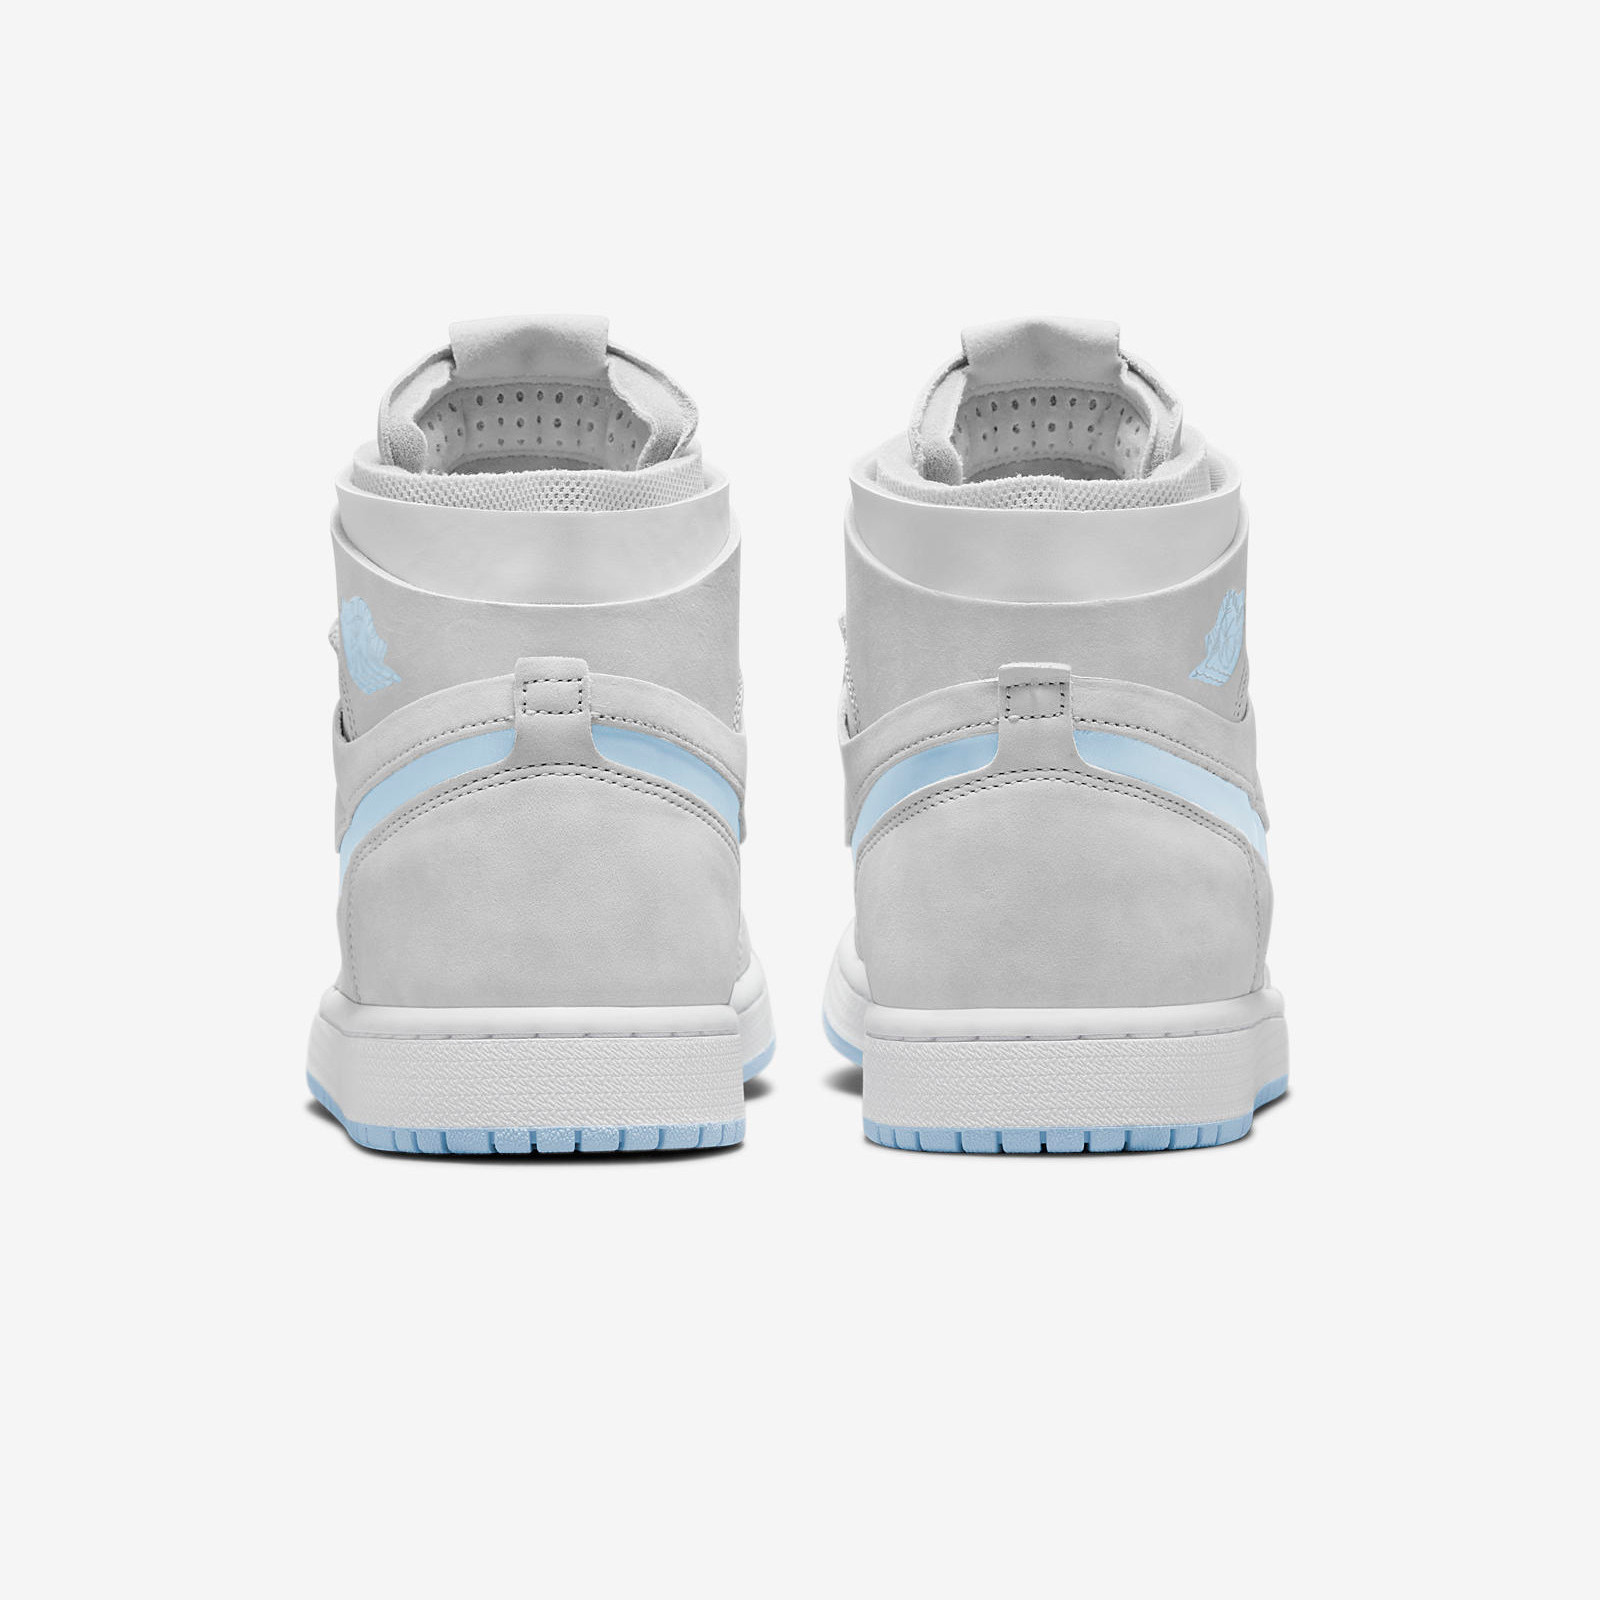 Air Jordan 1 Zoom Comfort
Grey / Blue